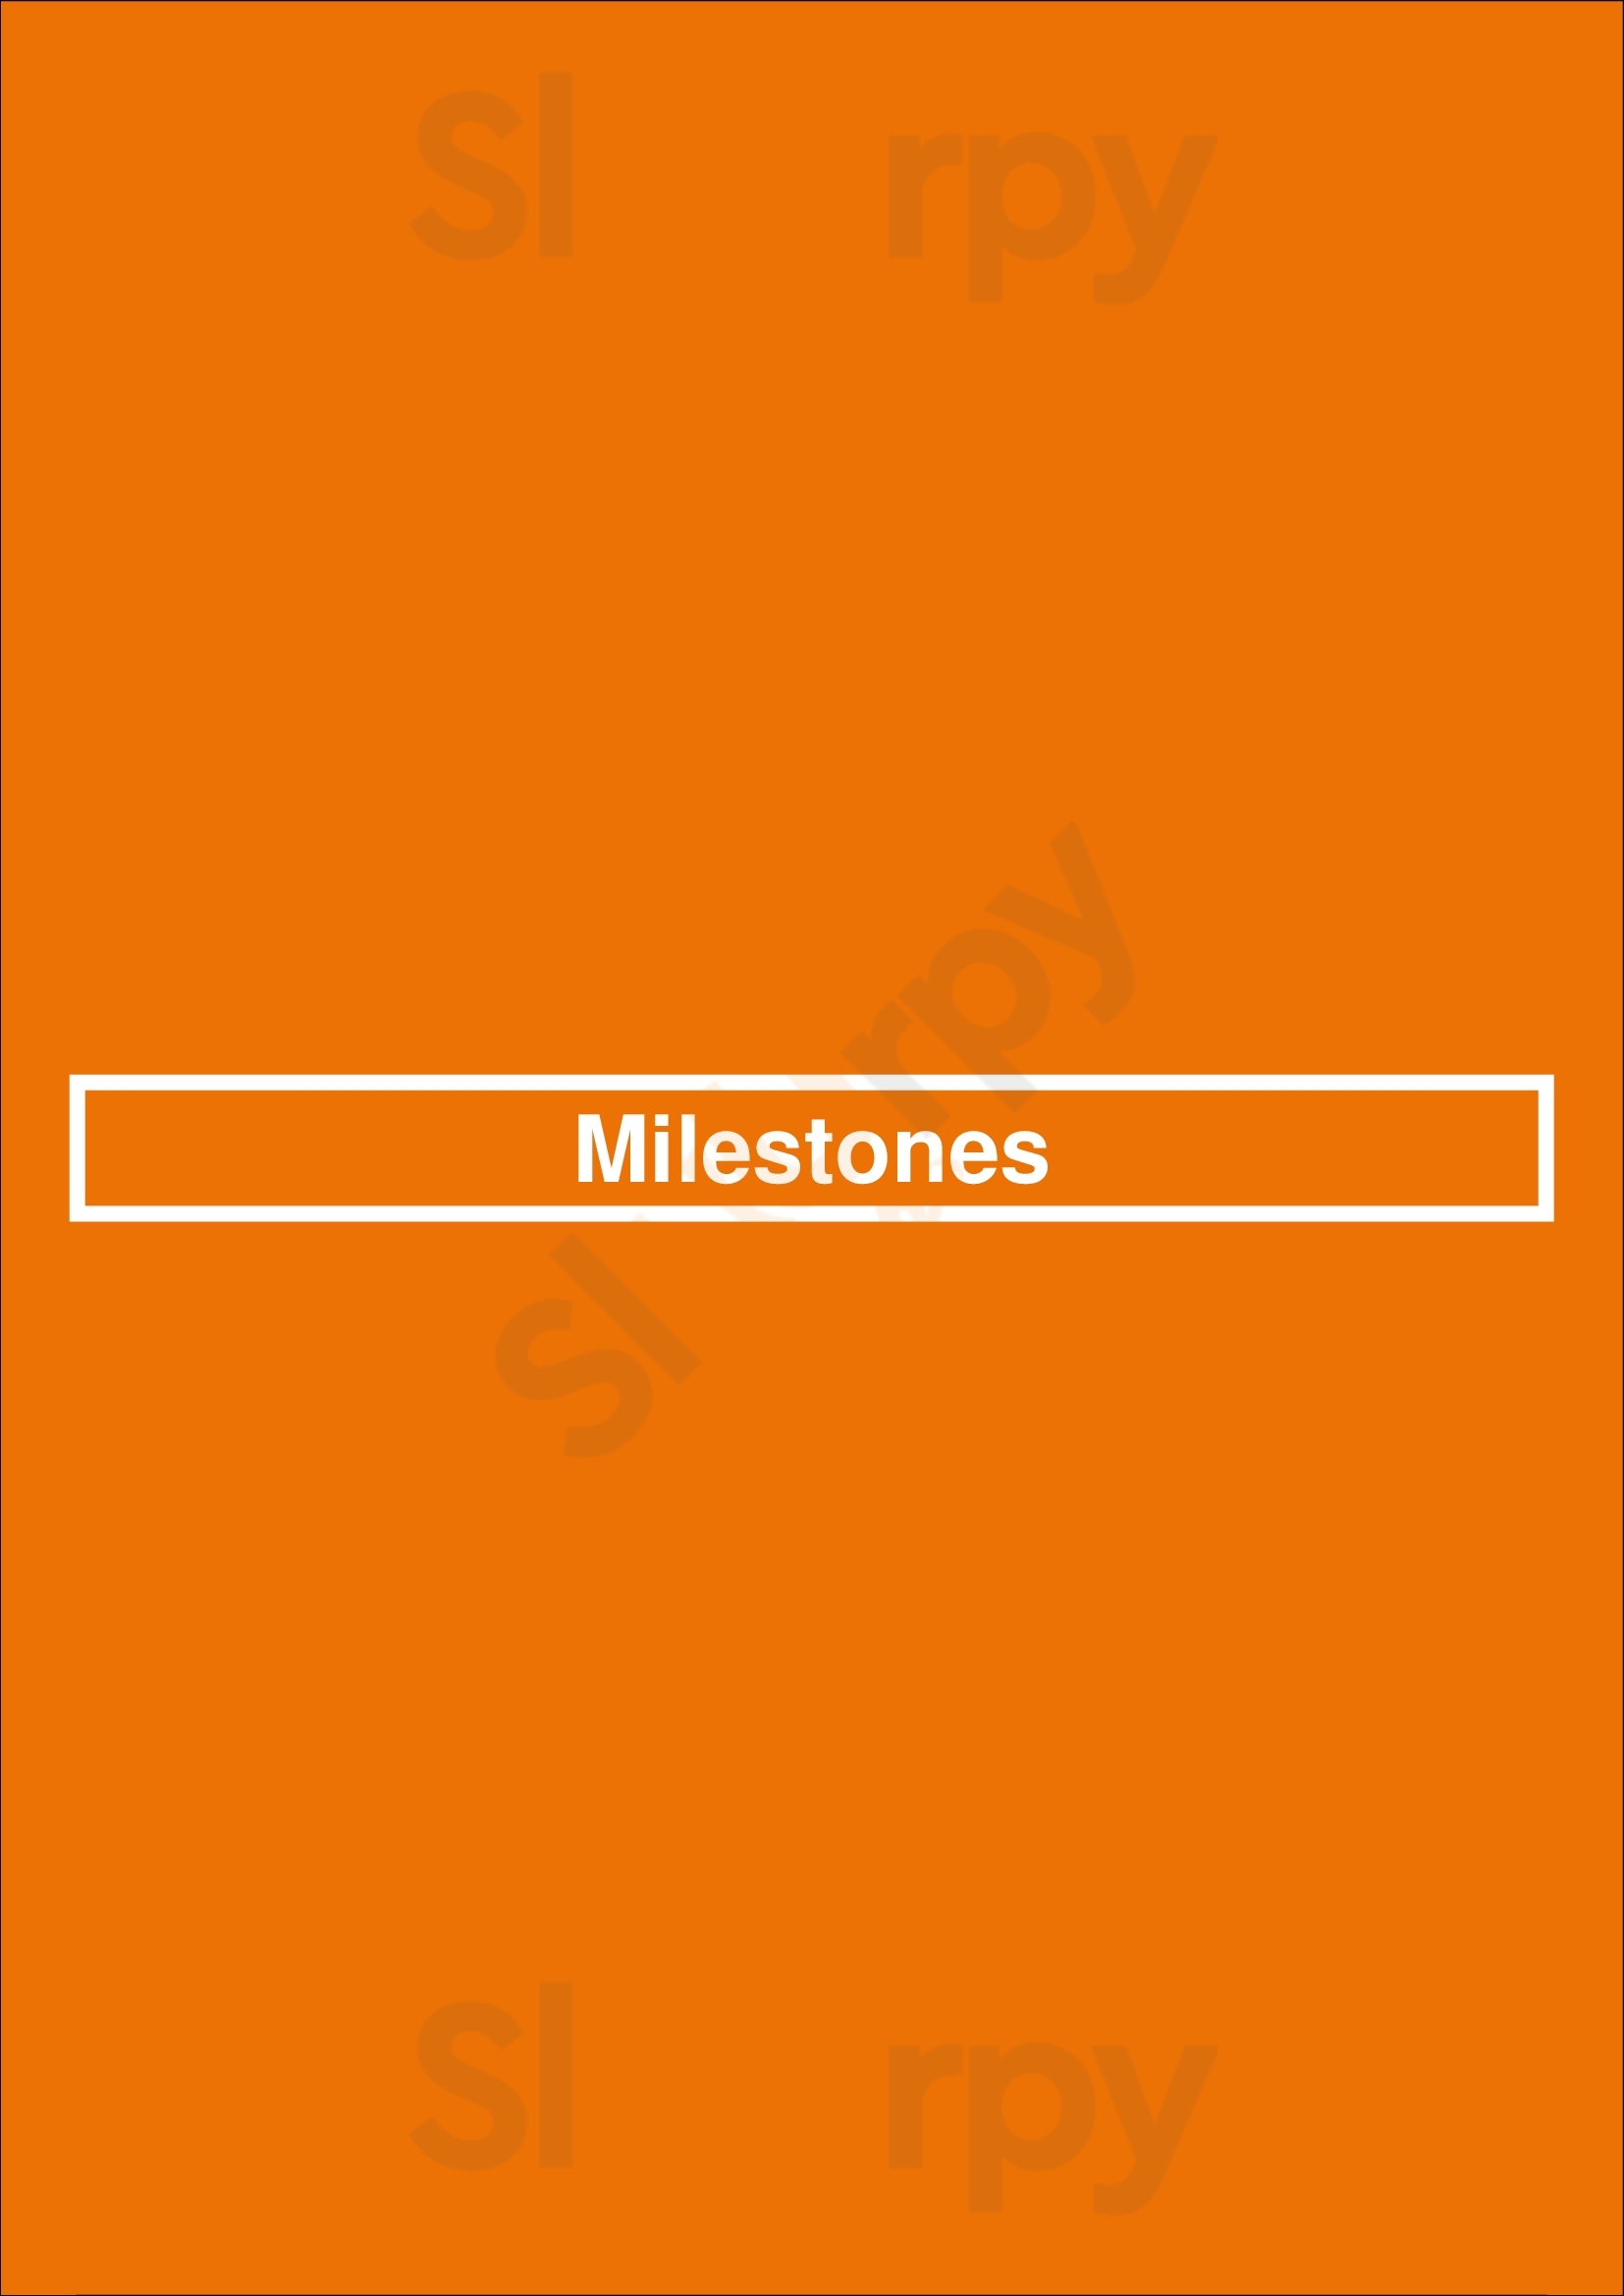 Milestones Kingston Menu - 1